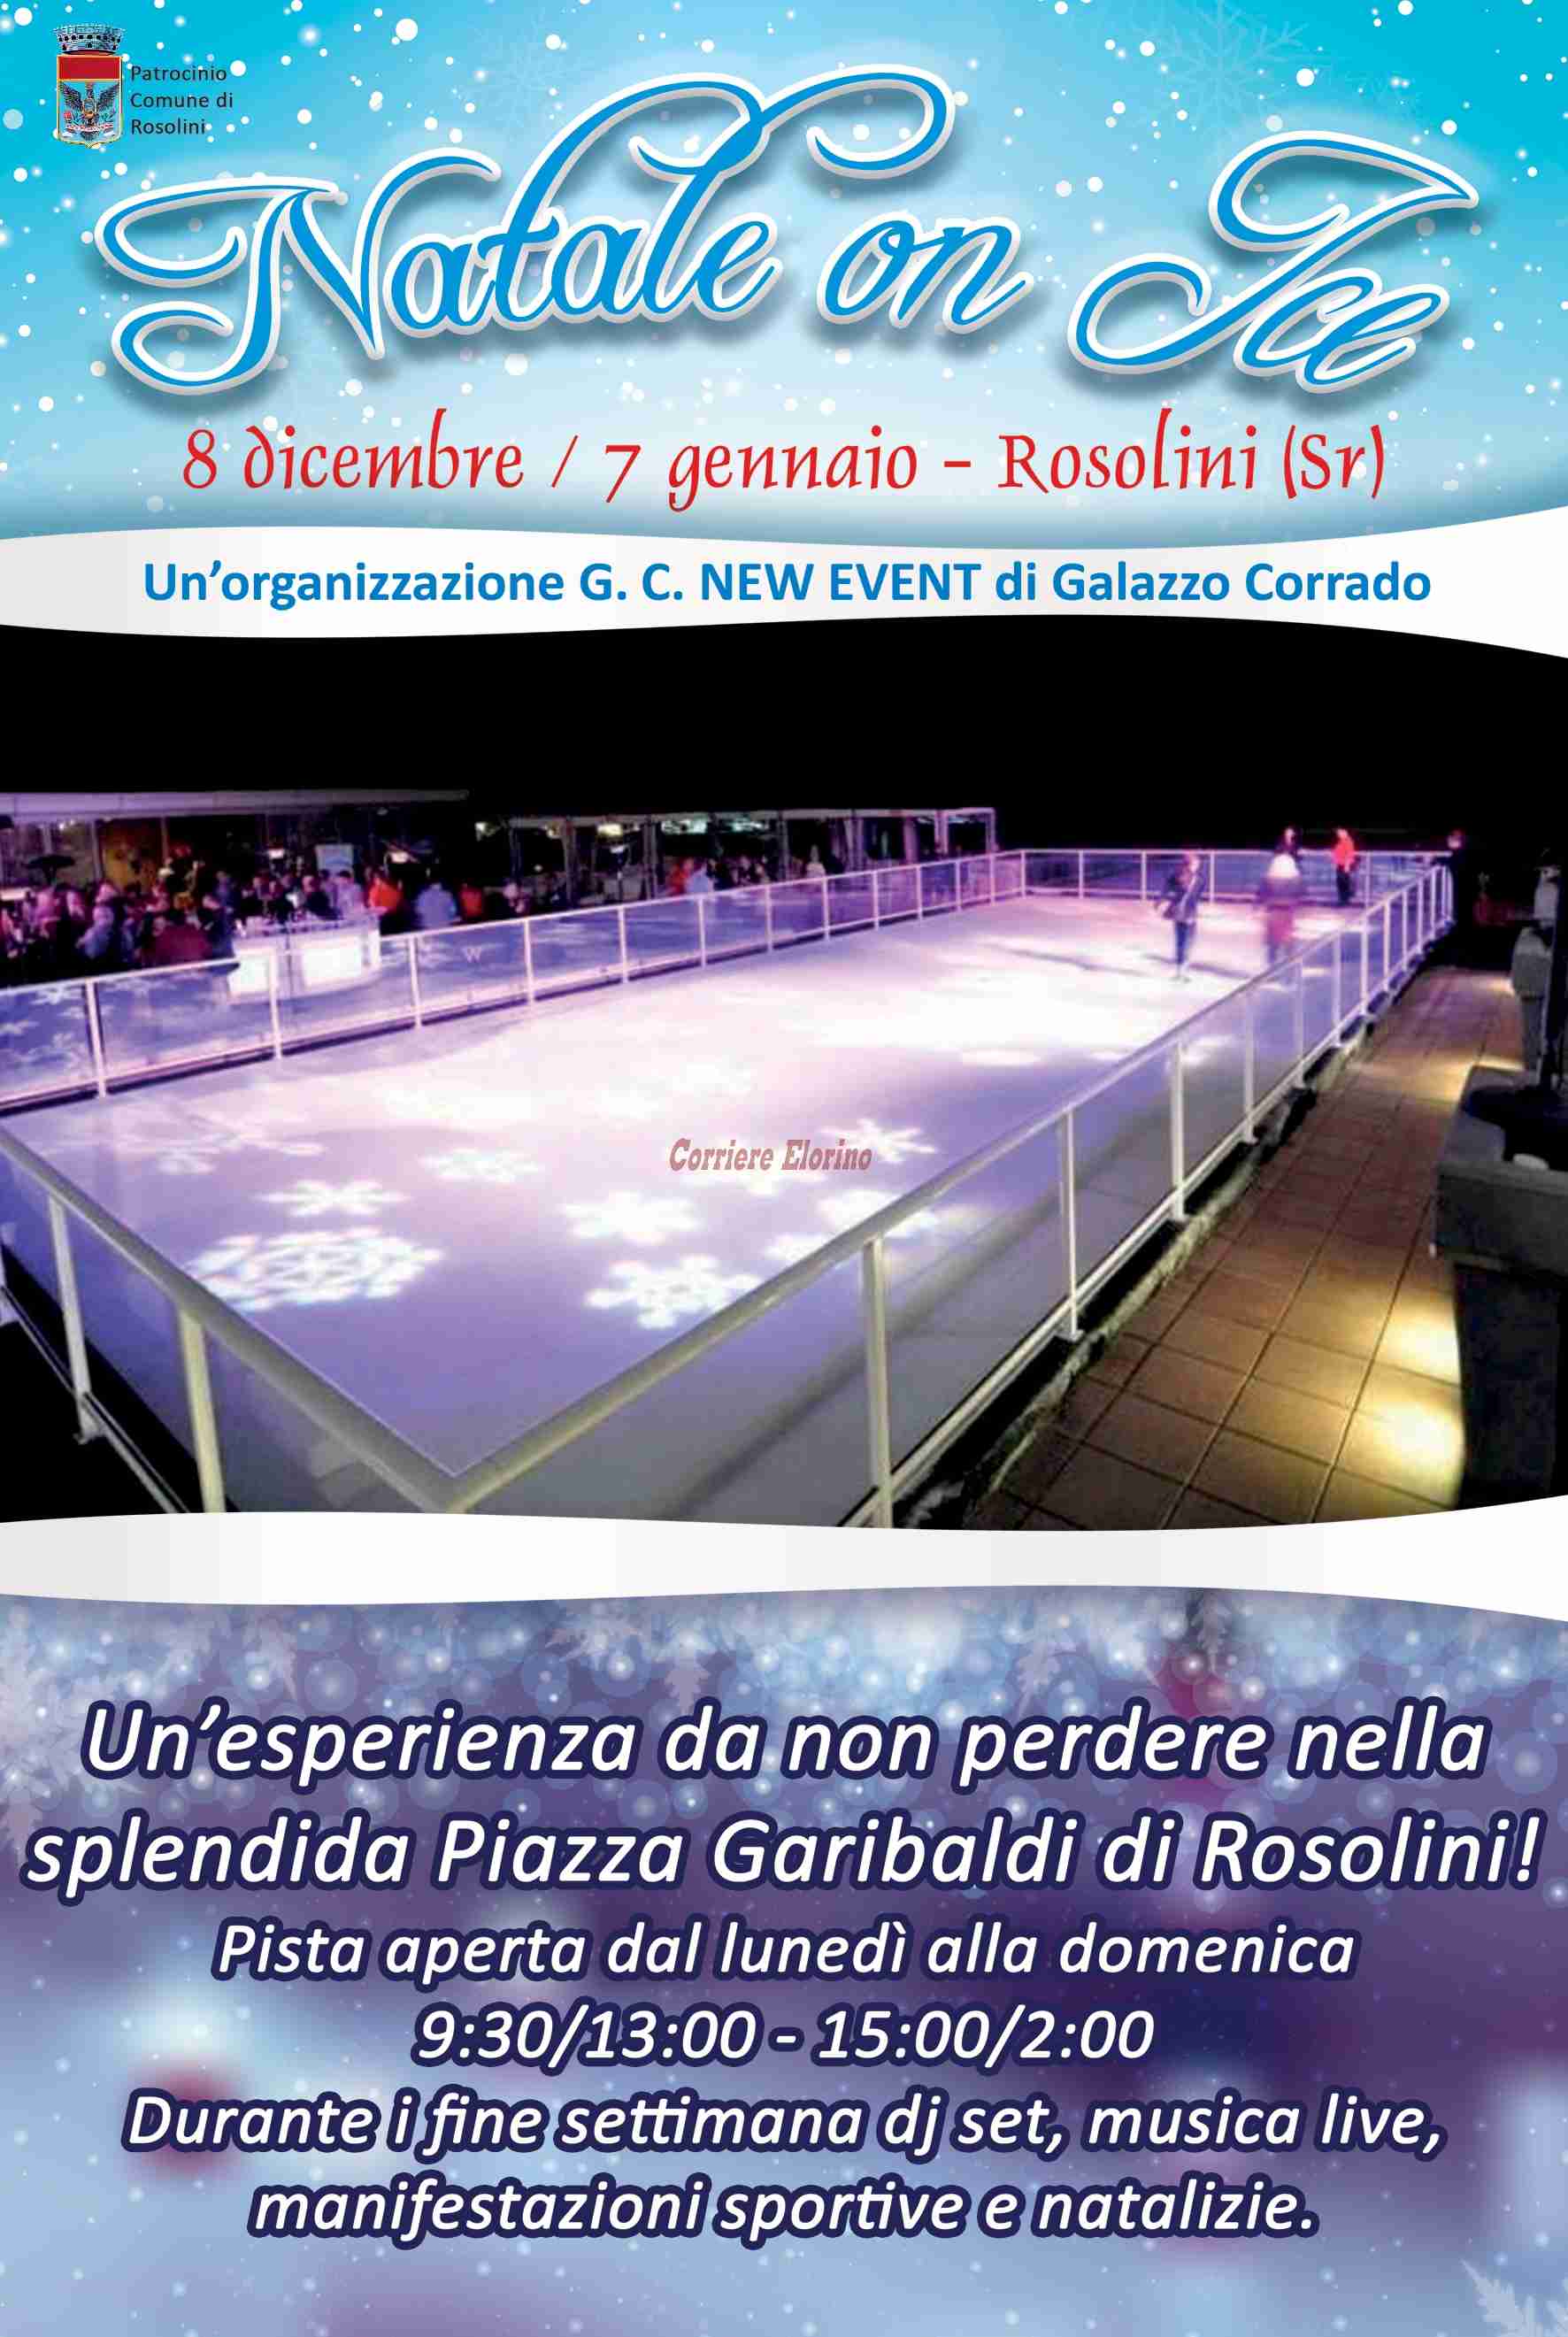 Da venerdì 8 dicembre “Natale on Ice”: si pattina sul ghiaccio in piazza Garibaldi